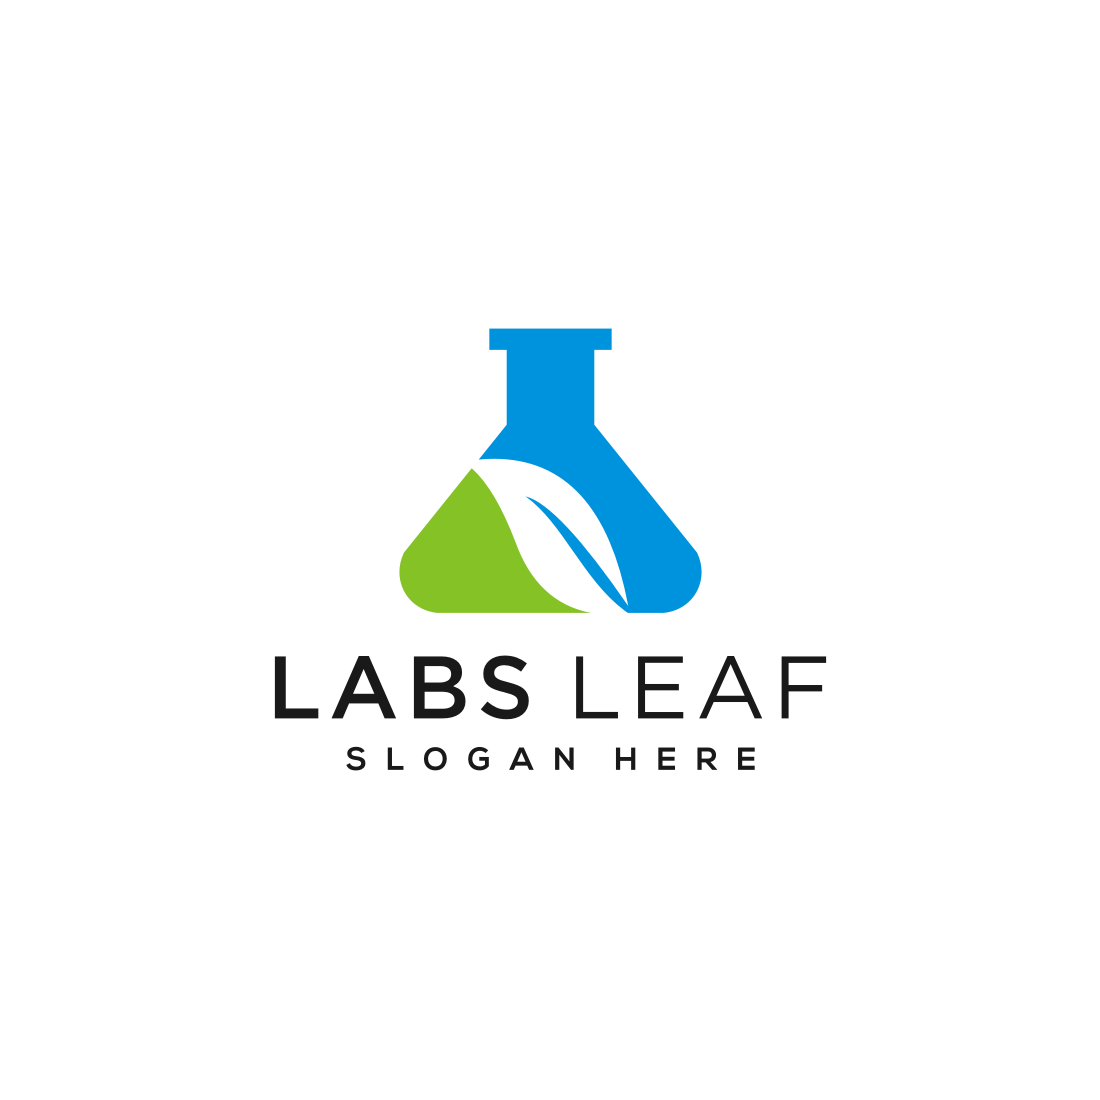 Tube Lab and Leaf Logo Vector Design.